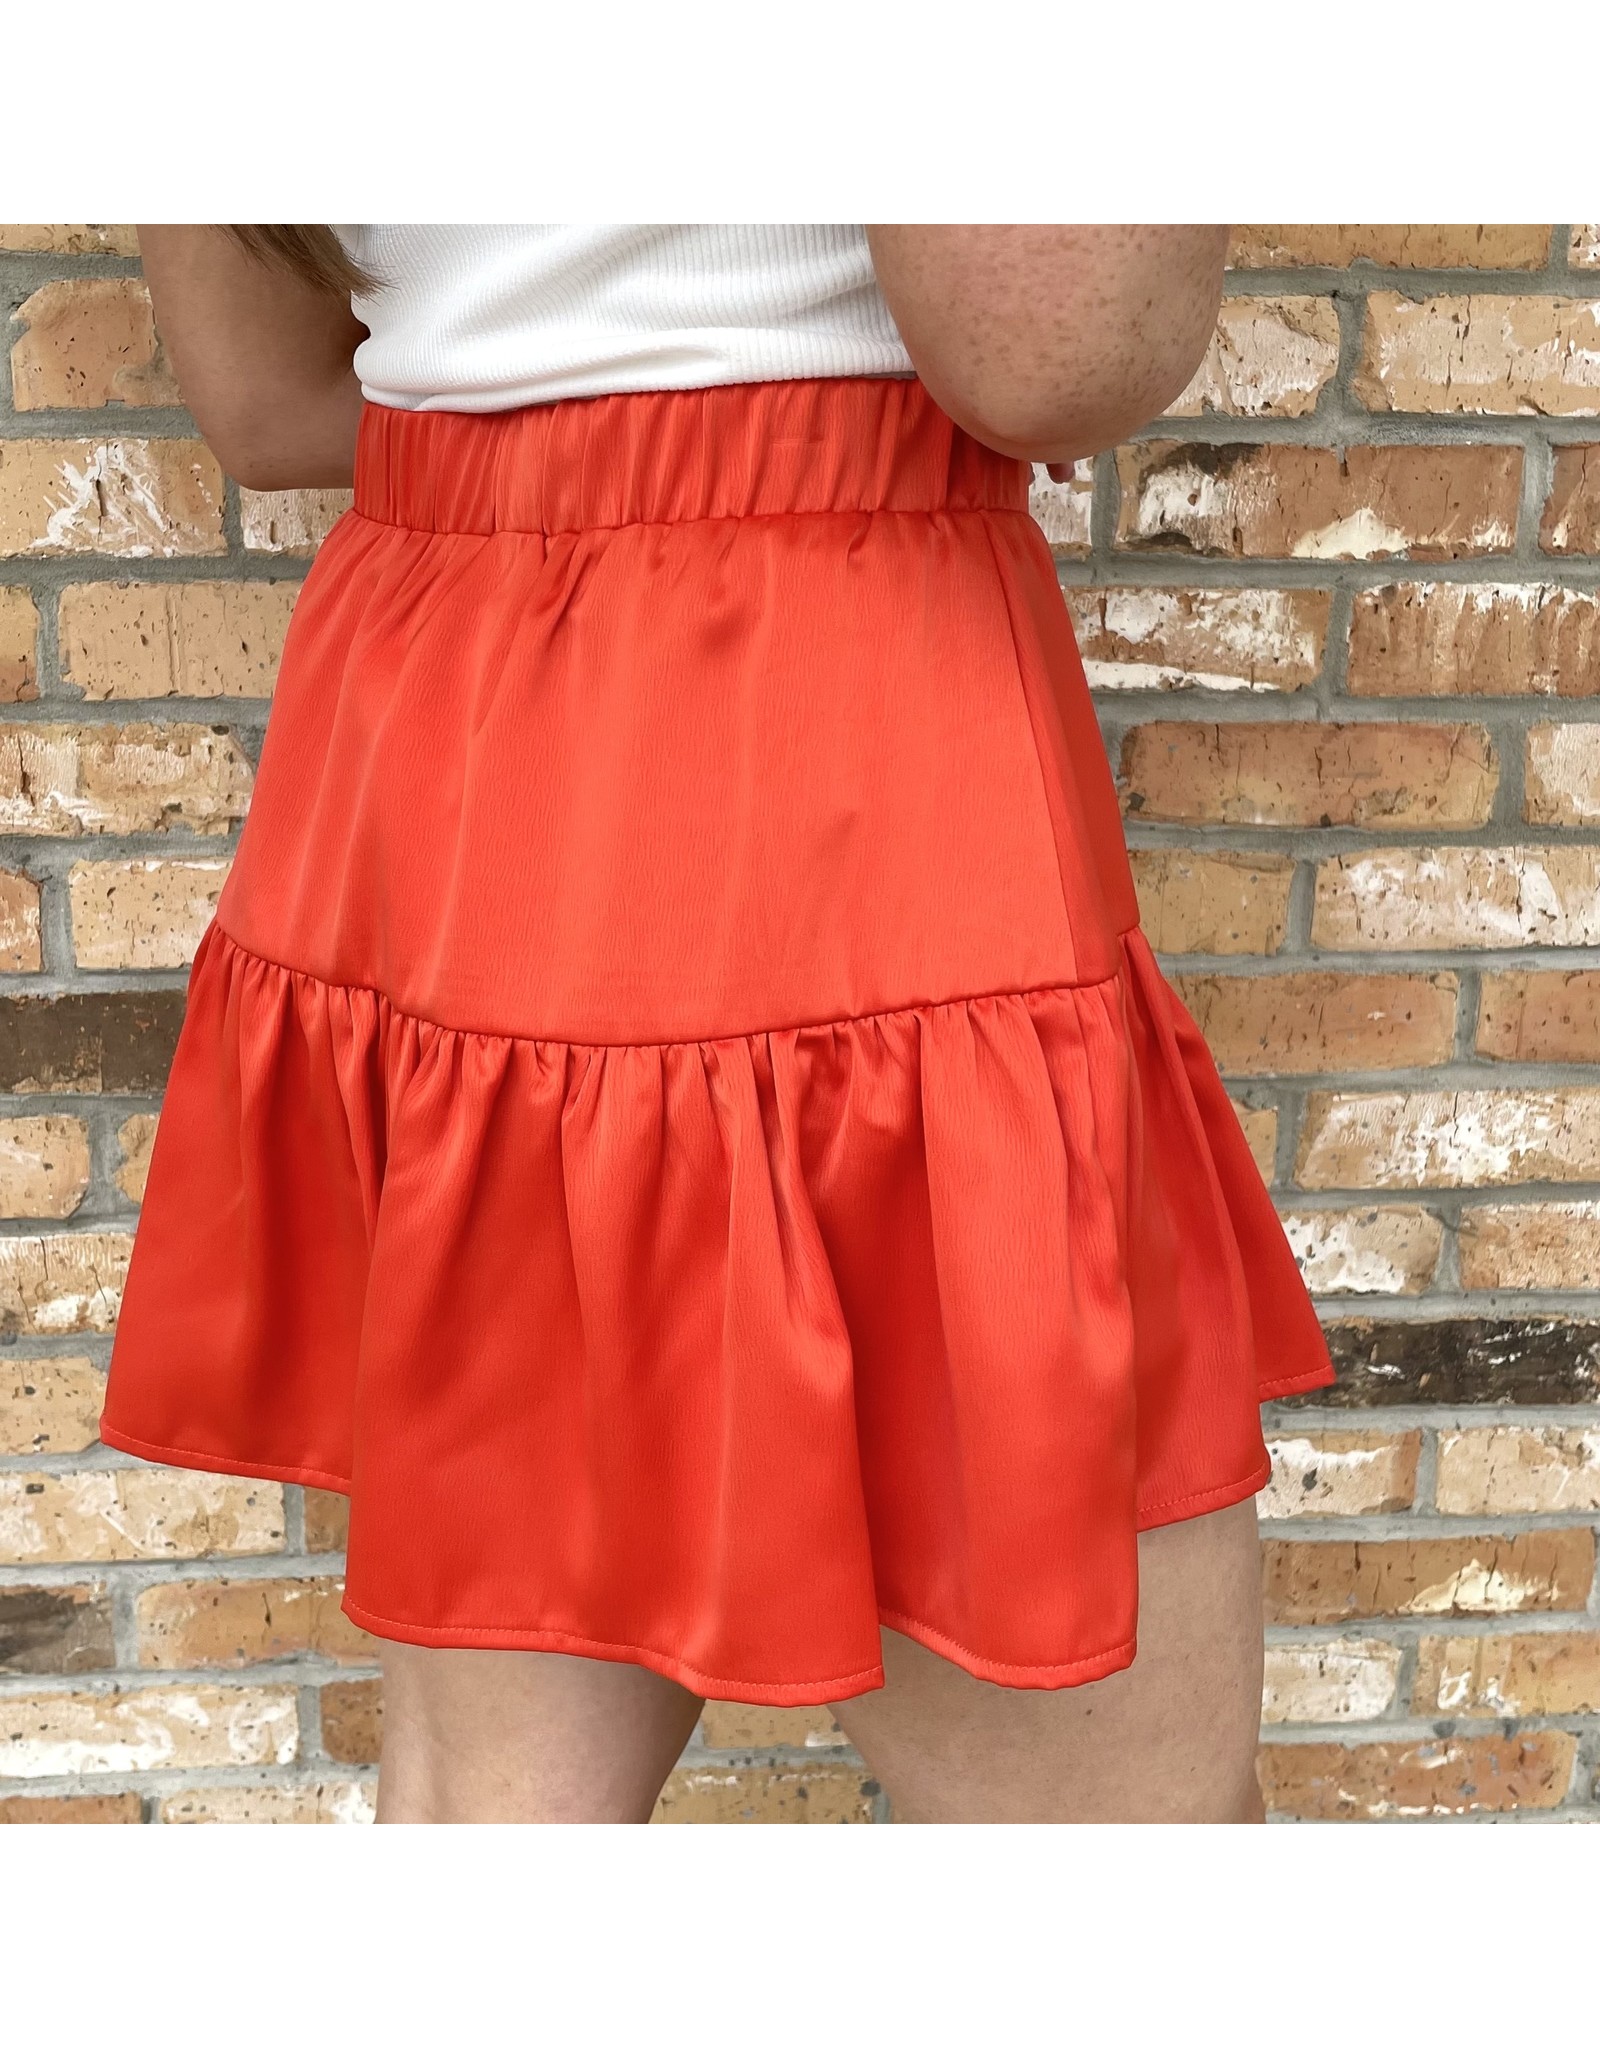 Orange Ruffled Shorts